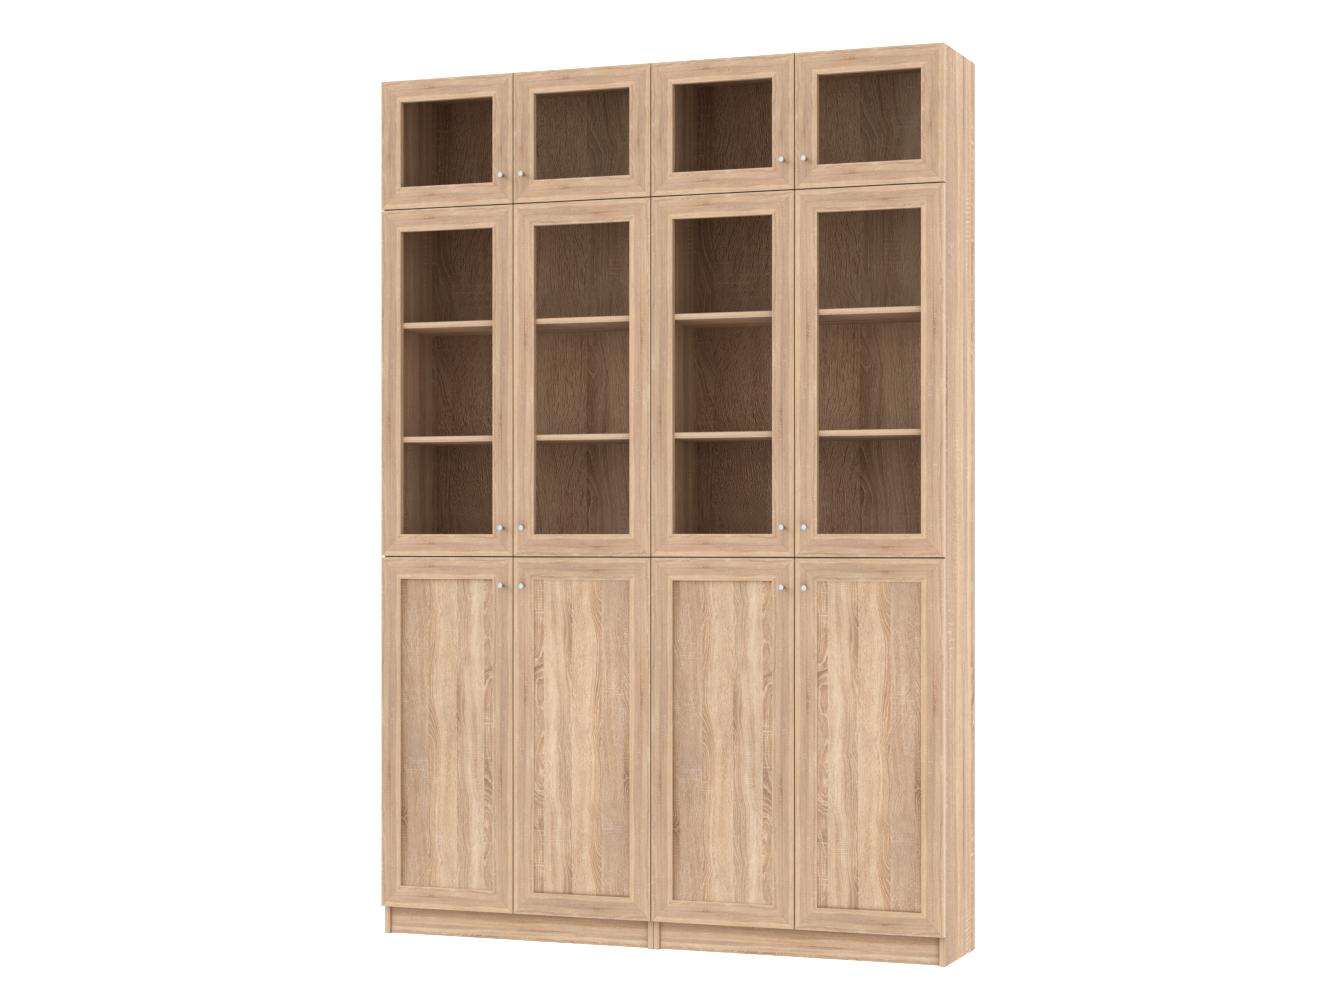 Изображение товара Книжный шкаф Билли 394 beige ИКЕА (IKEA), 160x30x237 см на сайте adeta.ru